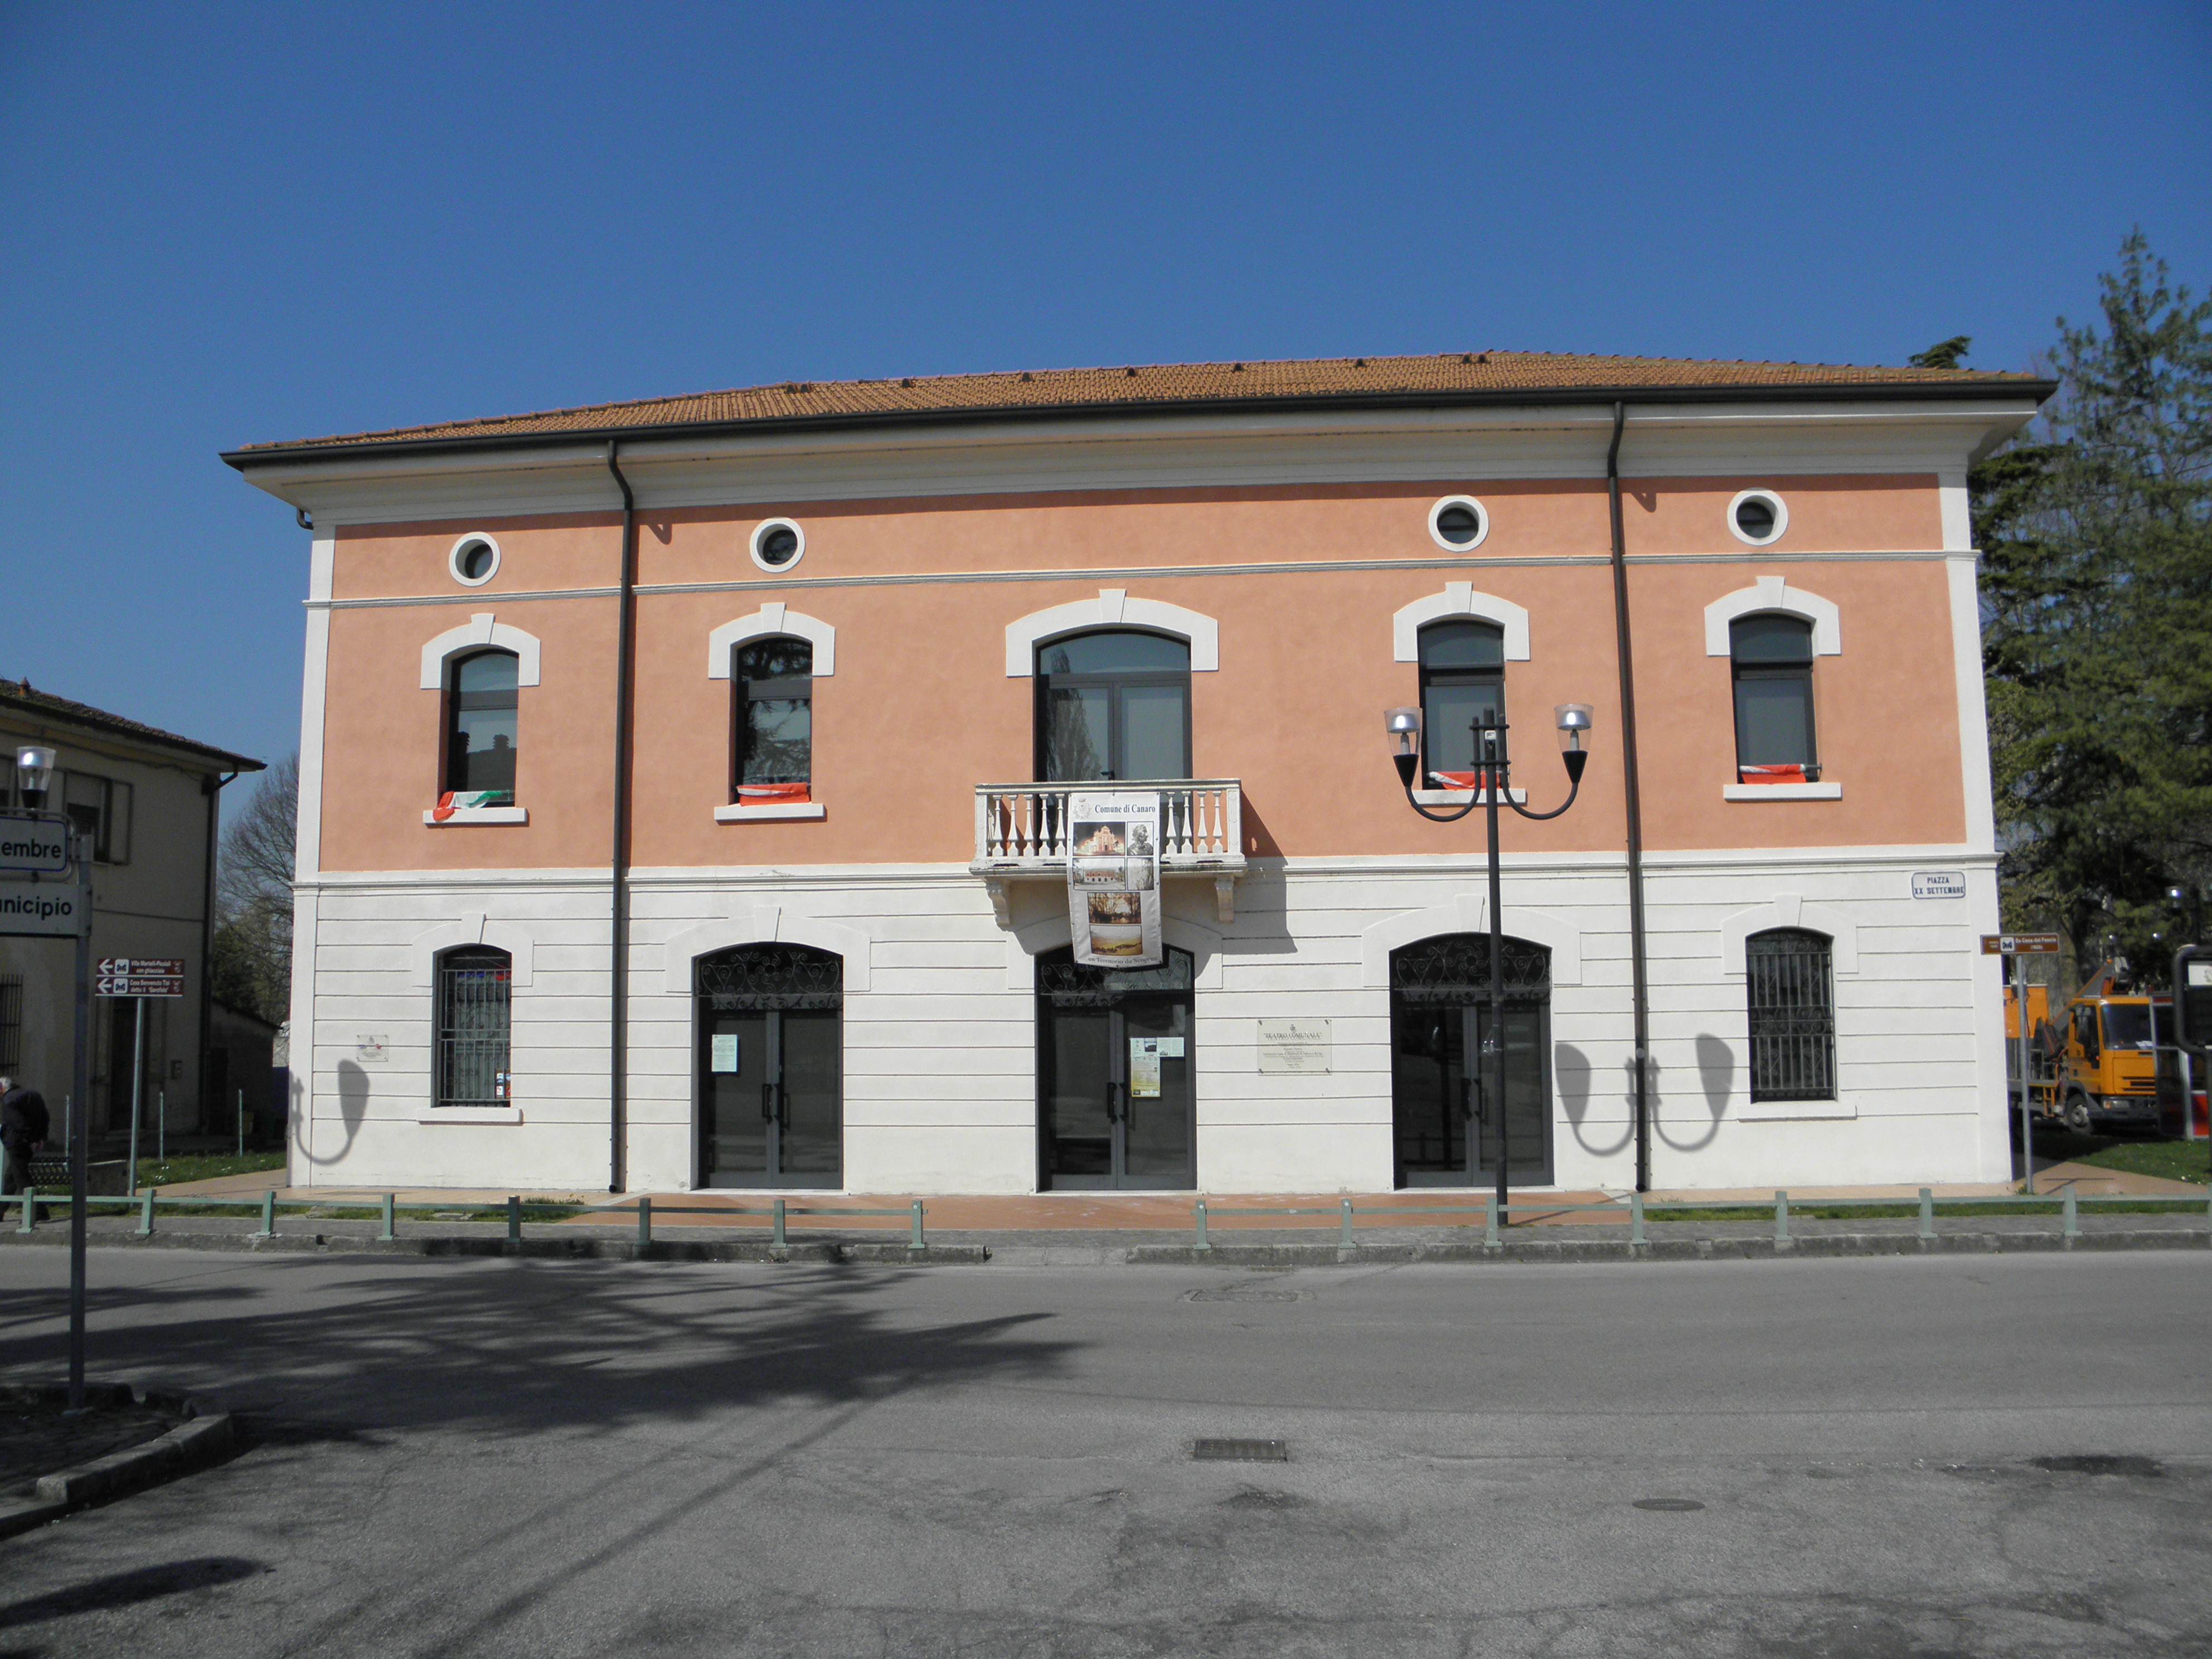 File:Teatro comunale, già casa del fascio (Canaro).jpg - Wikimedia Commons